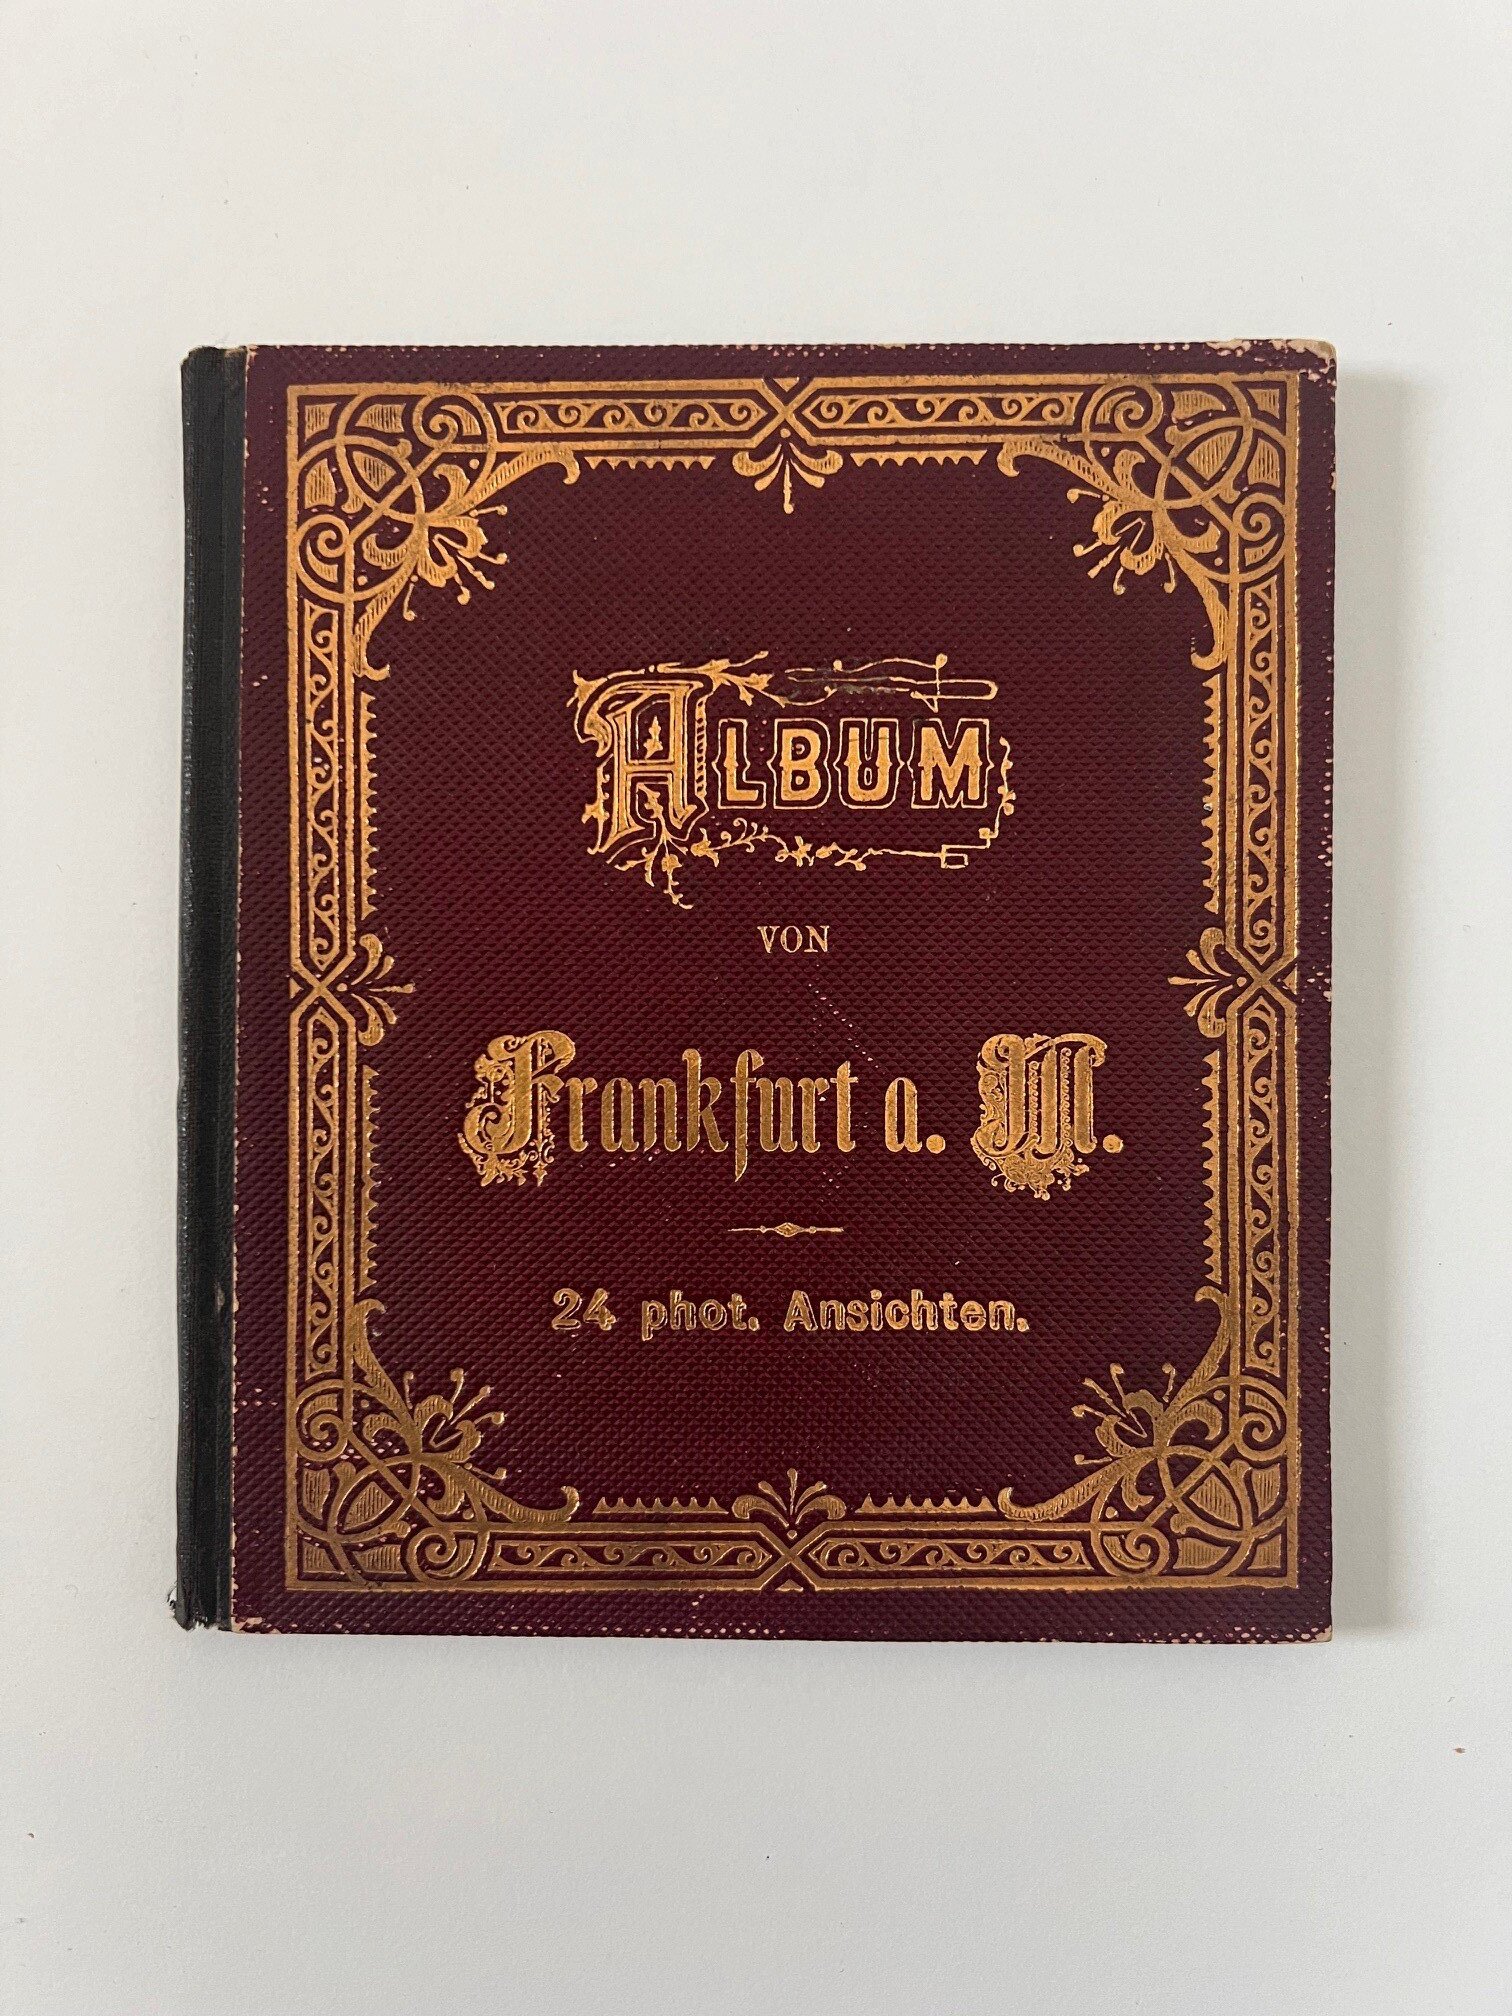 Unbekannter Hersteller, Album von Frankfurt a. M., 24 Lithographien als Leporello, ca. 1885. (Taunus-Rhein-Main - Regionalgeschichtliche Sammlung Dr. Stefan Naas CC BY-NC-SA)